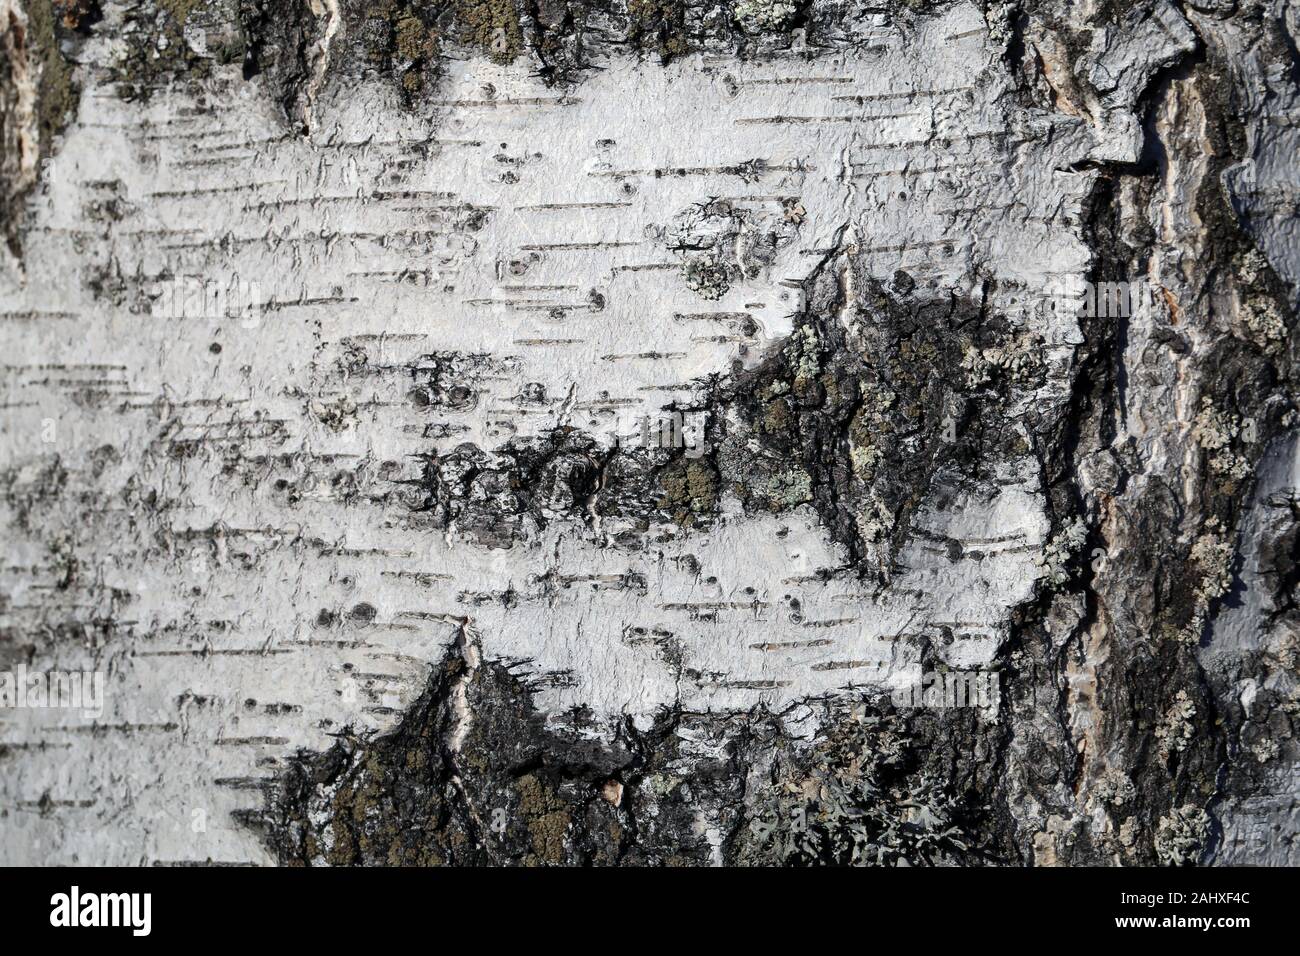 Birke Baumrinde Textur closeup in Finnland fotografiert. Die weiße Schale der Baum hat einige Risse. Detaillierte Art themed macroimage, Color Foto. Stockfoto